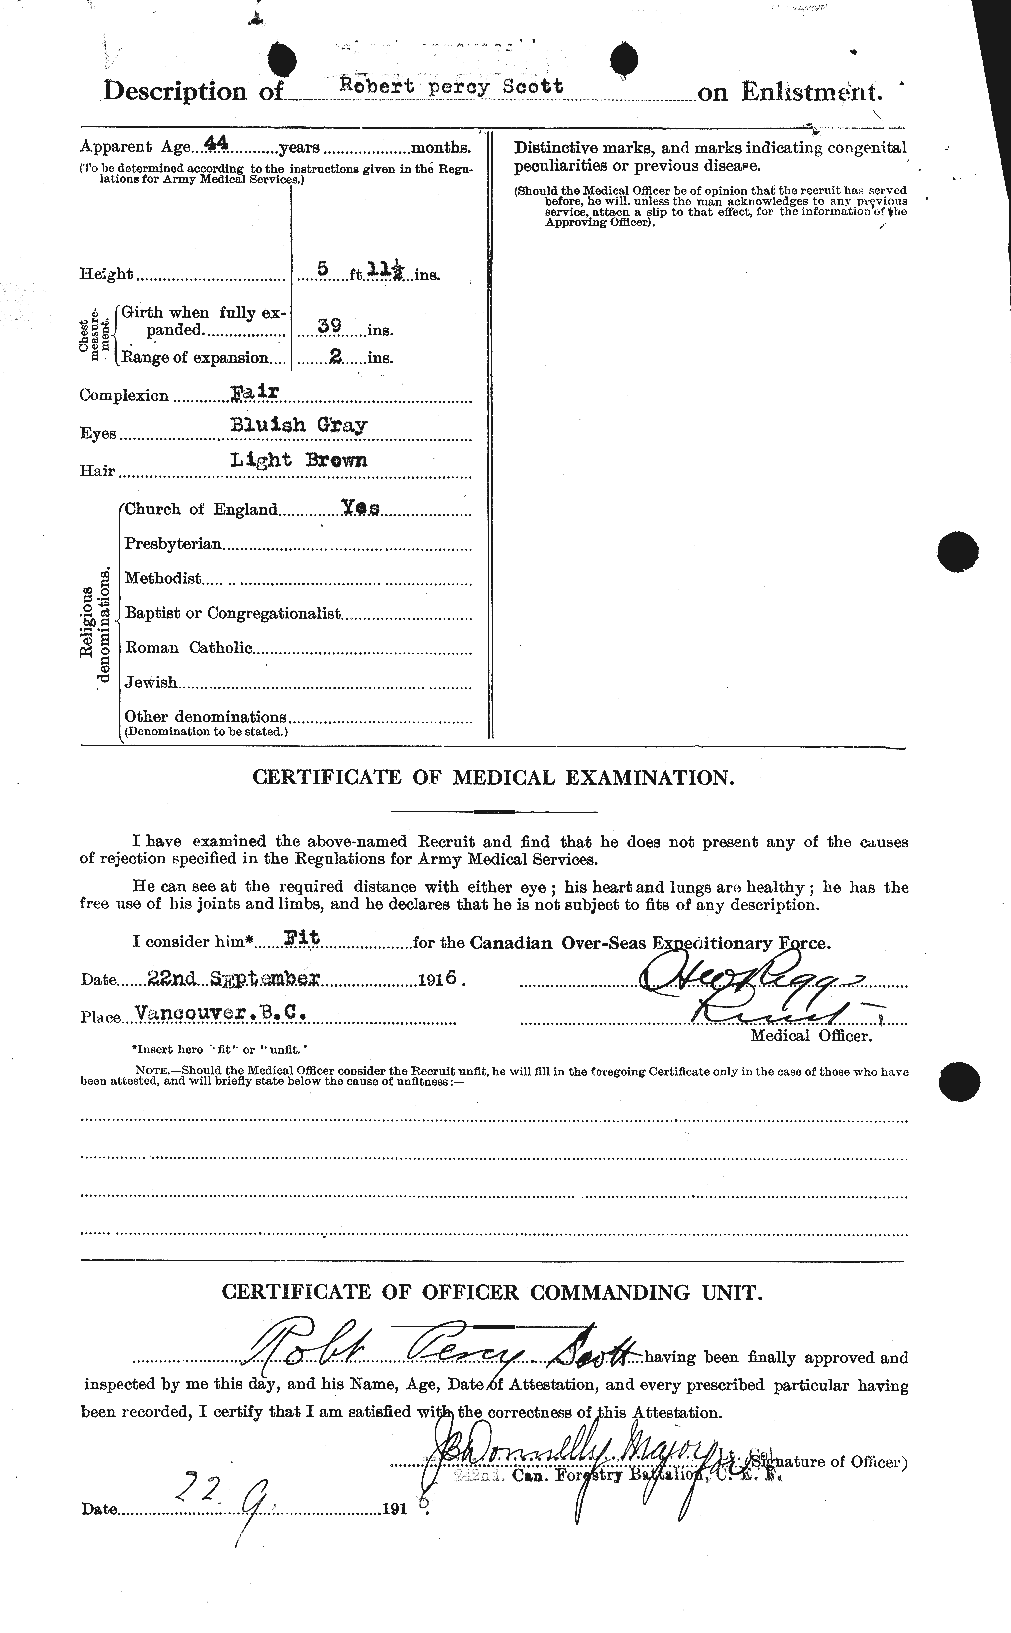 Dossiers du Personnel de la Première Guerre mondiale - CEC 089121b